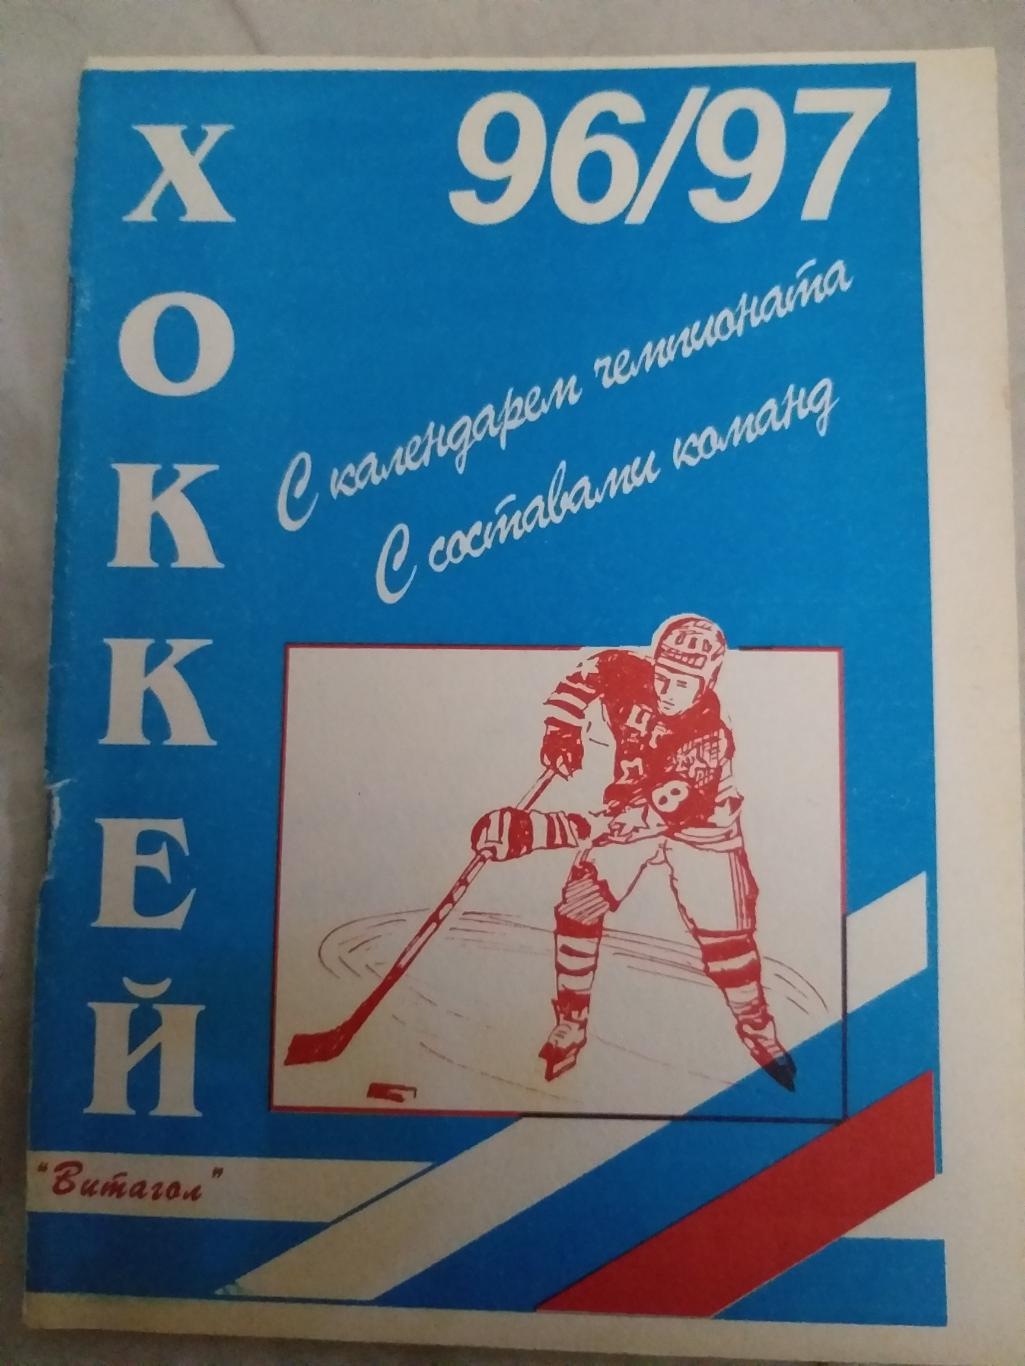 Справочник 1996/1997 Хоккей России Санкт-Петербург